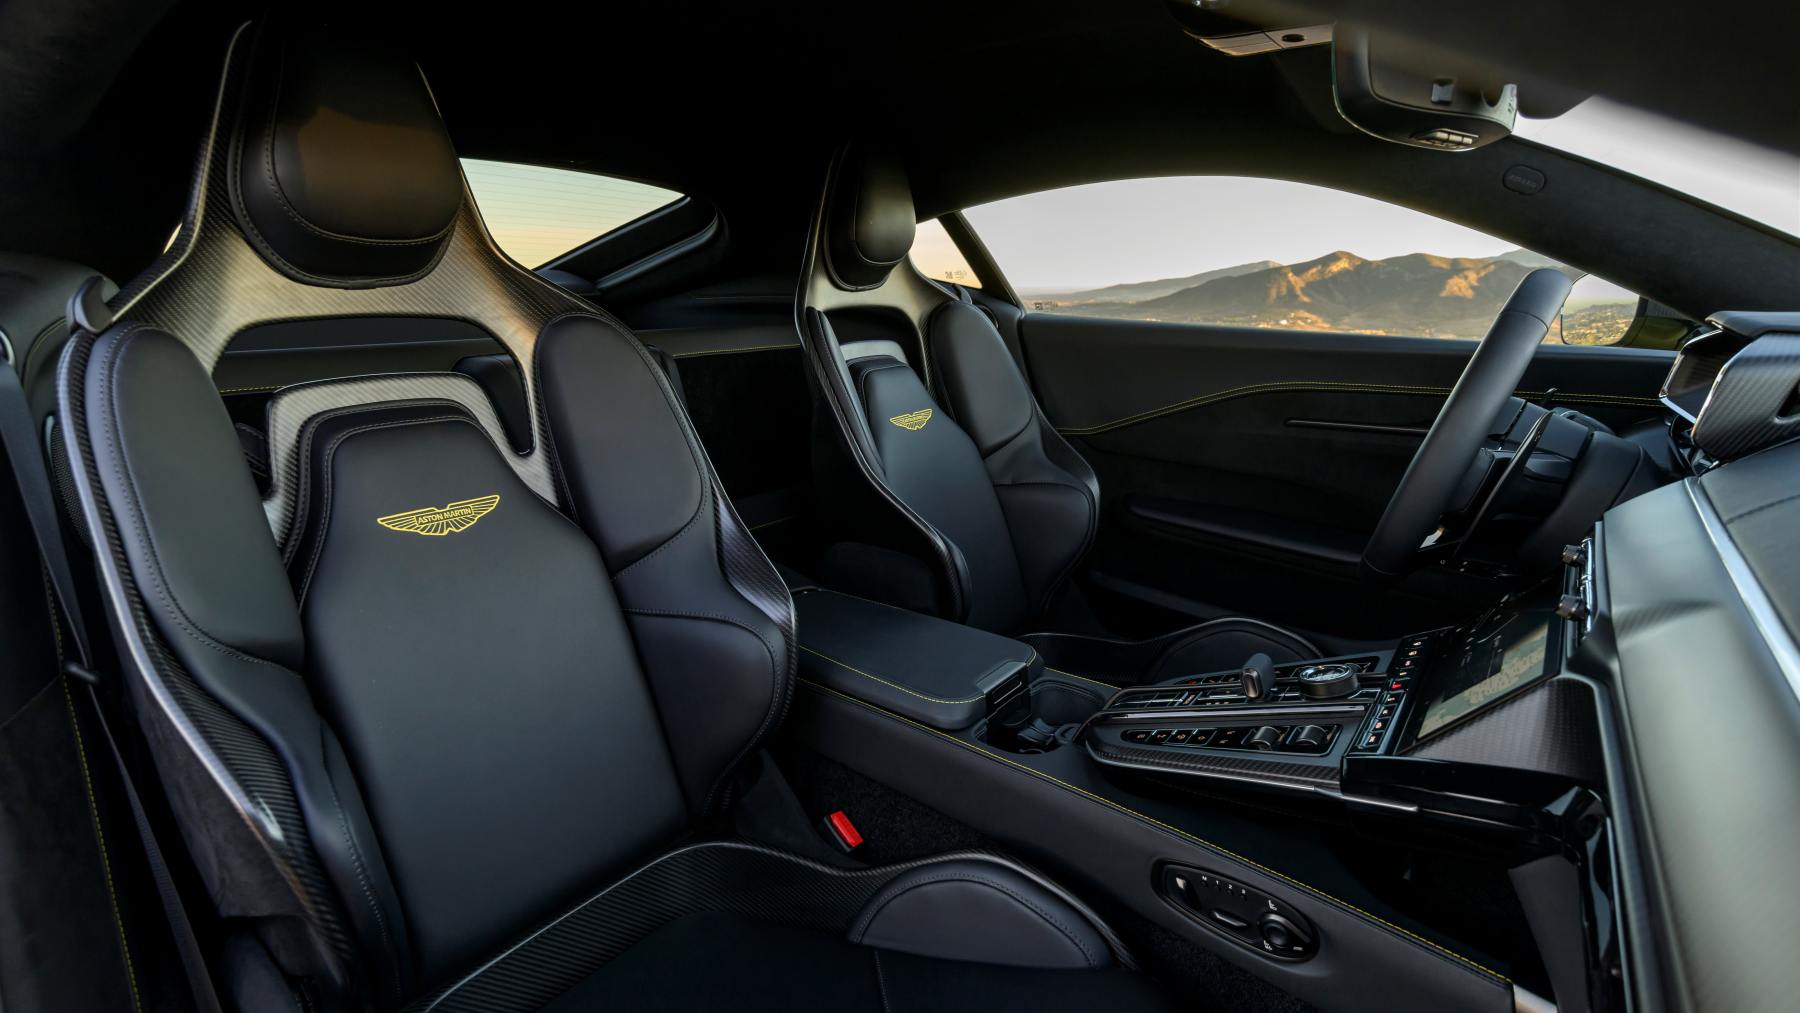 Aston Martin Vantage interior frontal seats 1